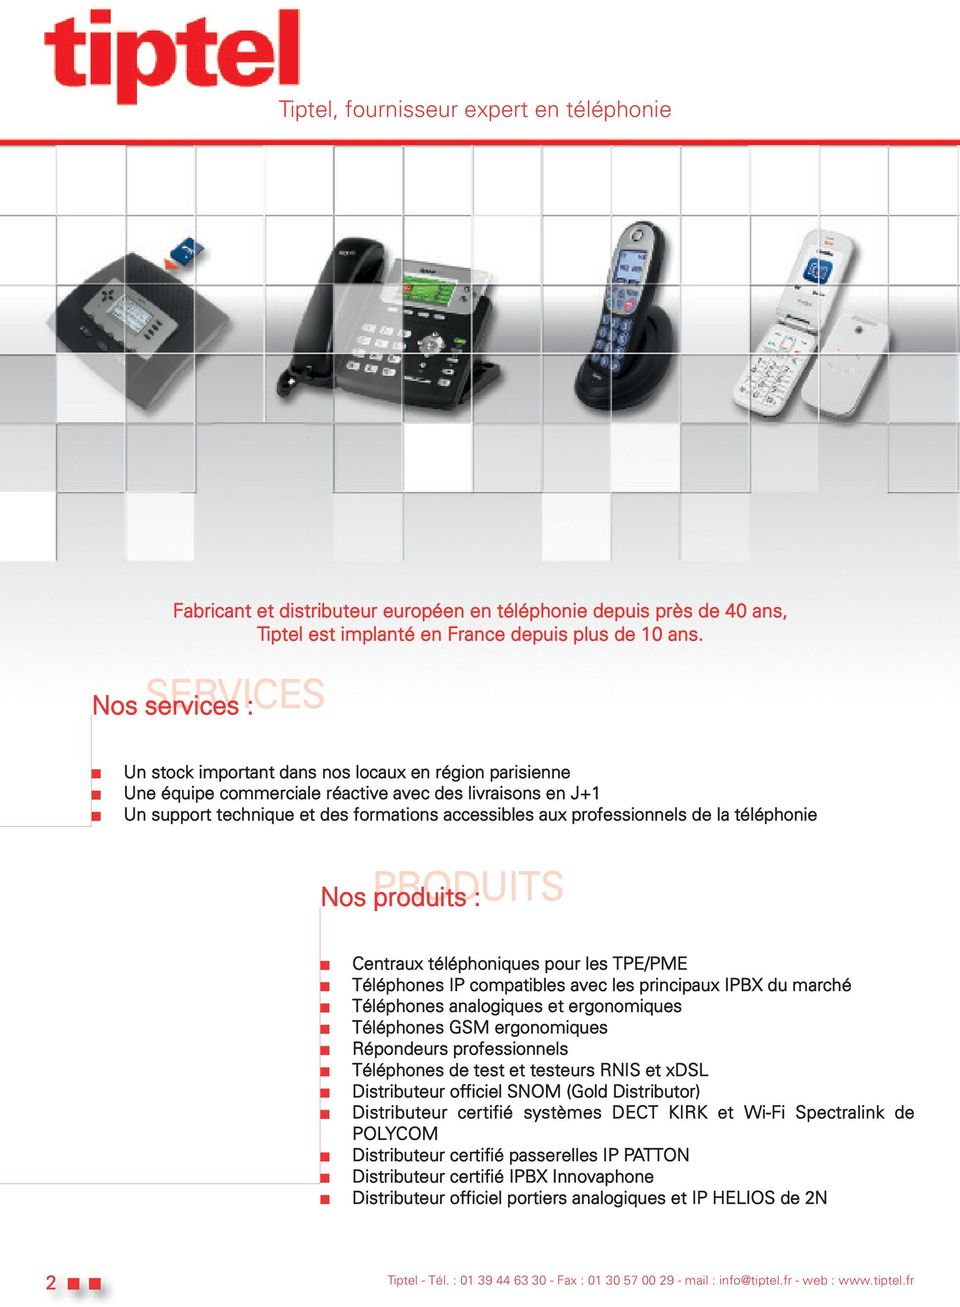 professionnels de la téléphonie PRODUITS Nos produits : Centraux téléphoniques pour les TPE/PME Téléphones IP compatibles avec les principaux IPBX du marché Téléphones analogiques et ergonomiques